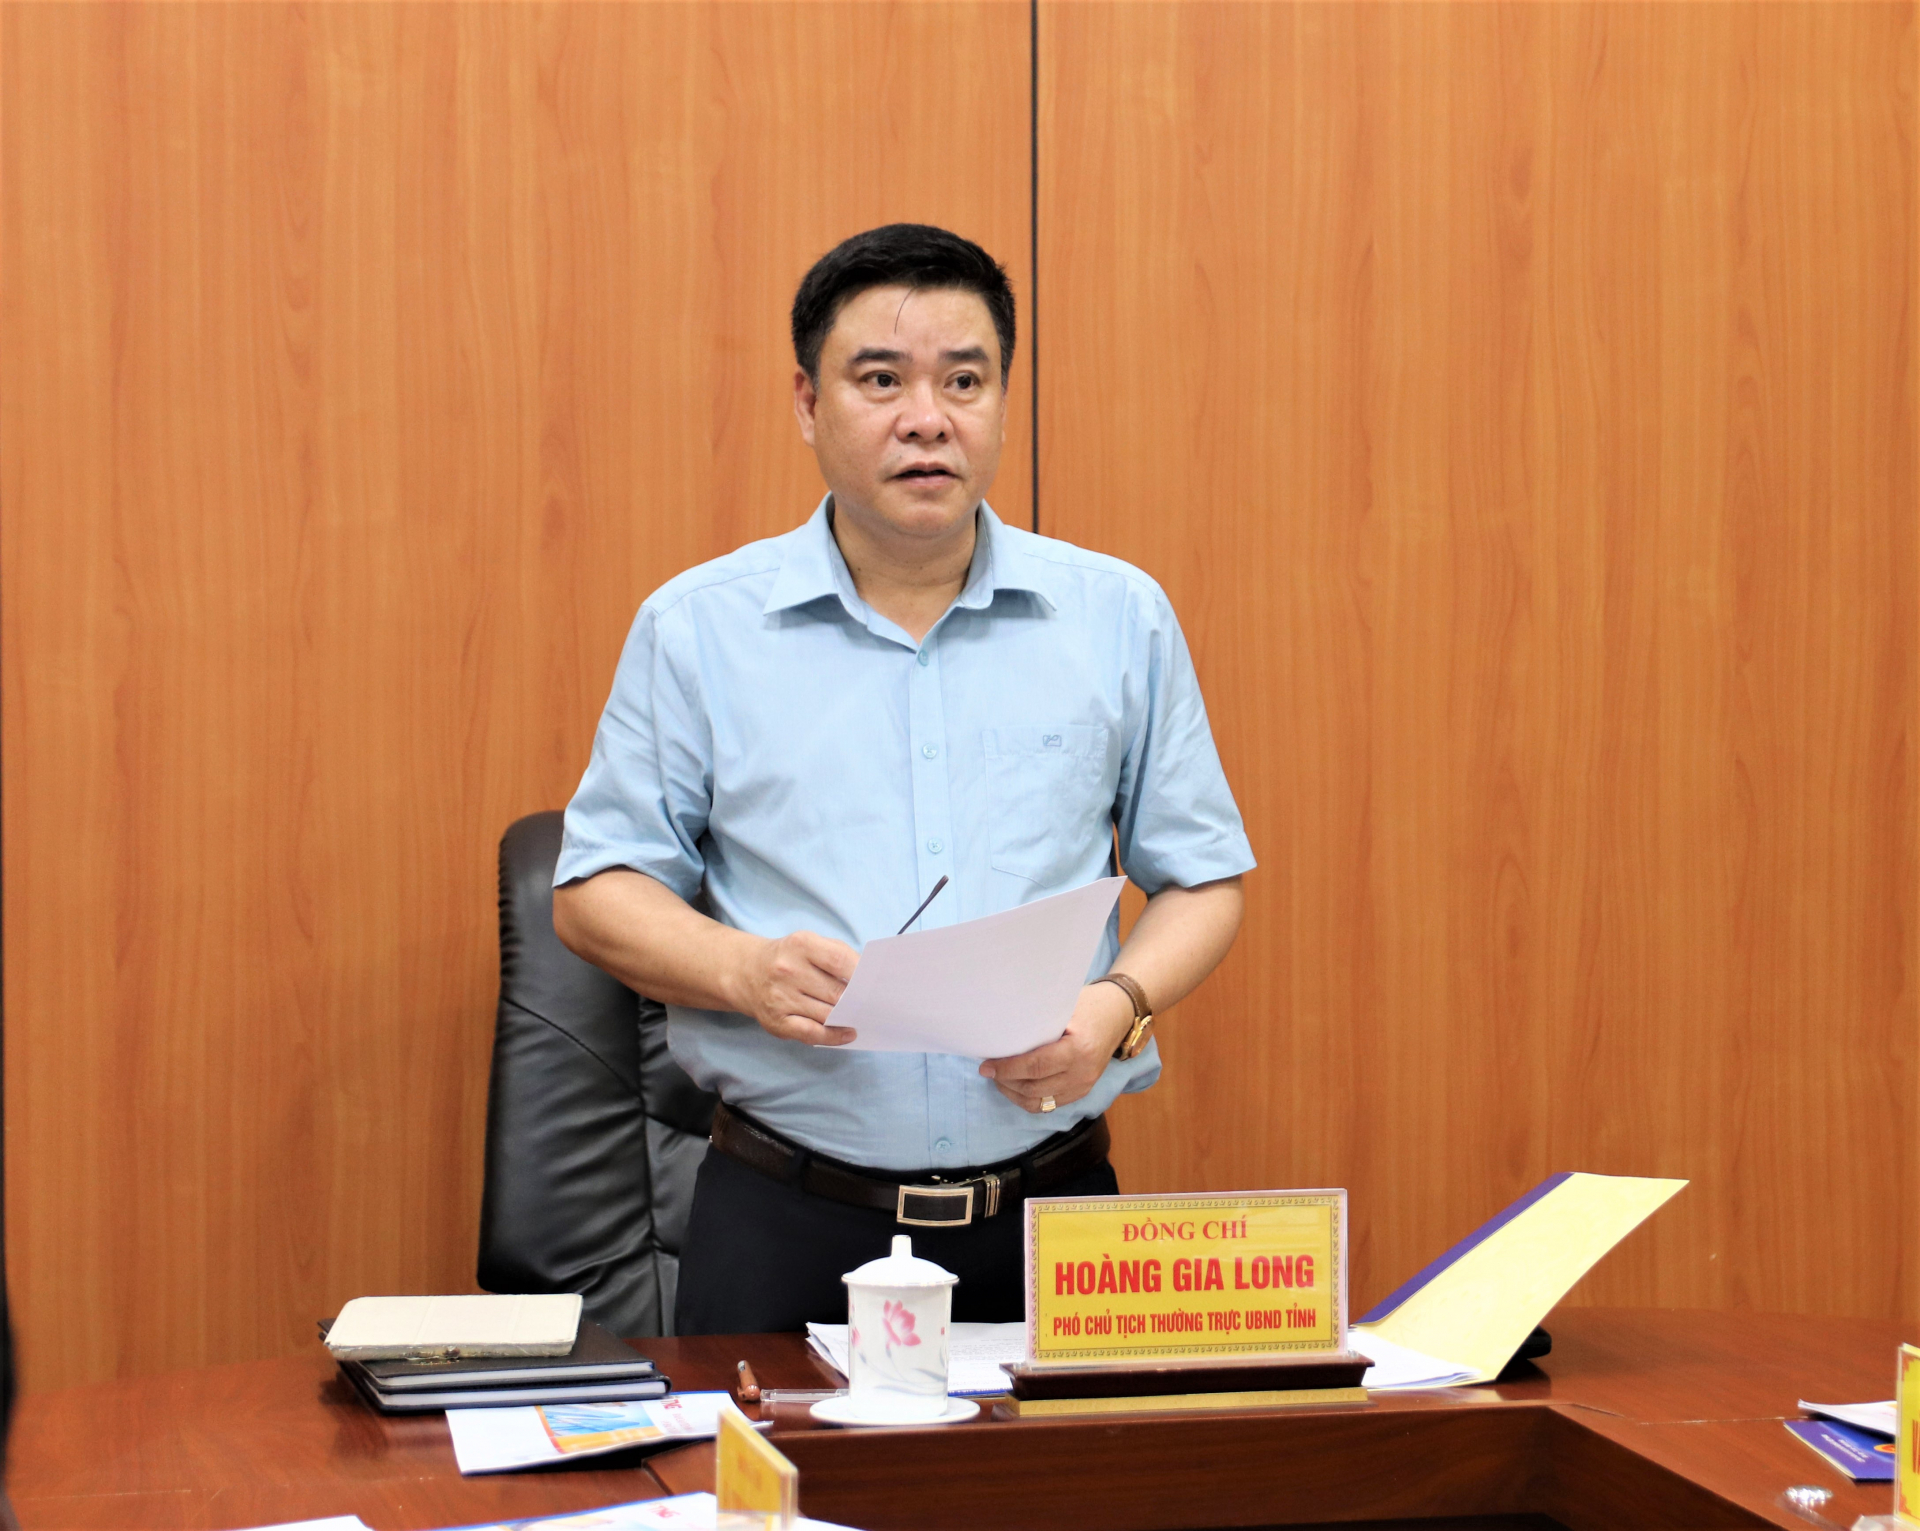 Phó Chủ tịch Thường trực UBND tỉnh Hoàng Gia Long kết luận buổi làm việc.